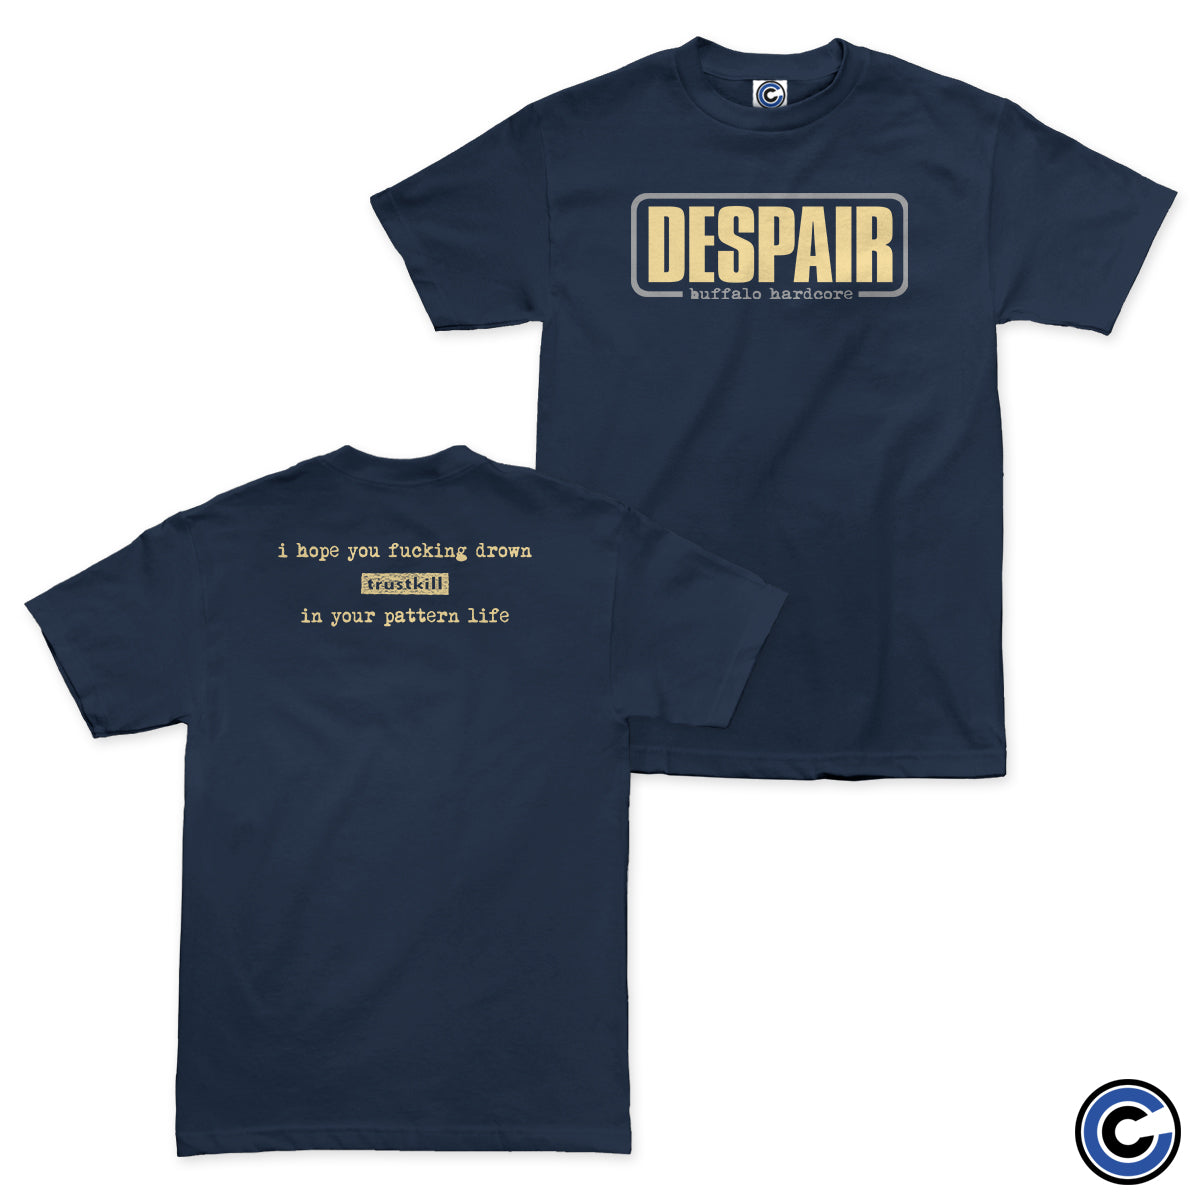 Despair "Drown" Shirt